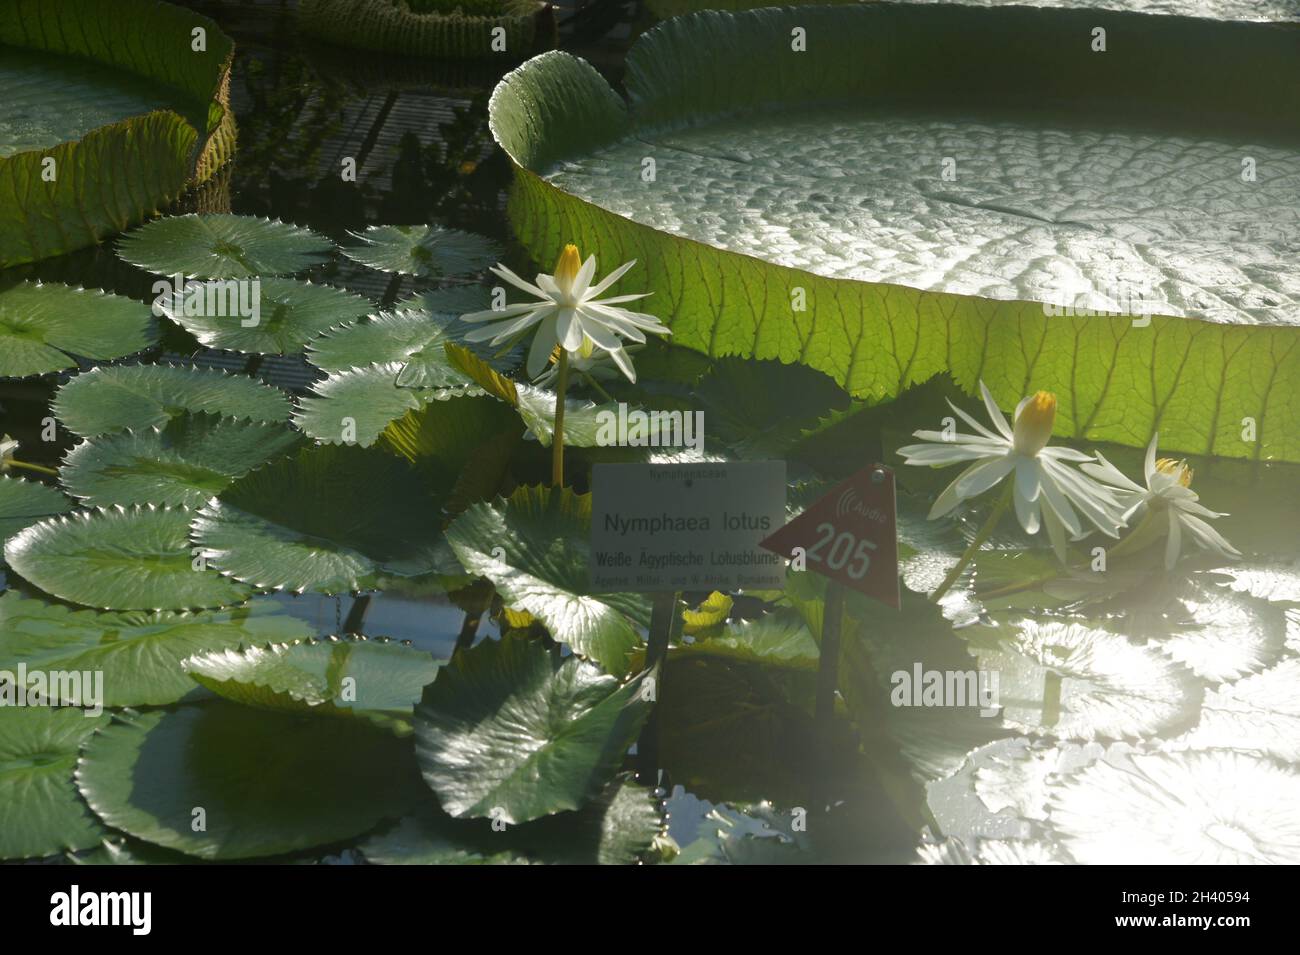 Nymphaea lotus, white Egyptian lotus Stock Photo